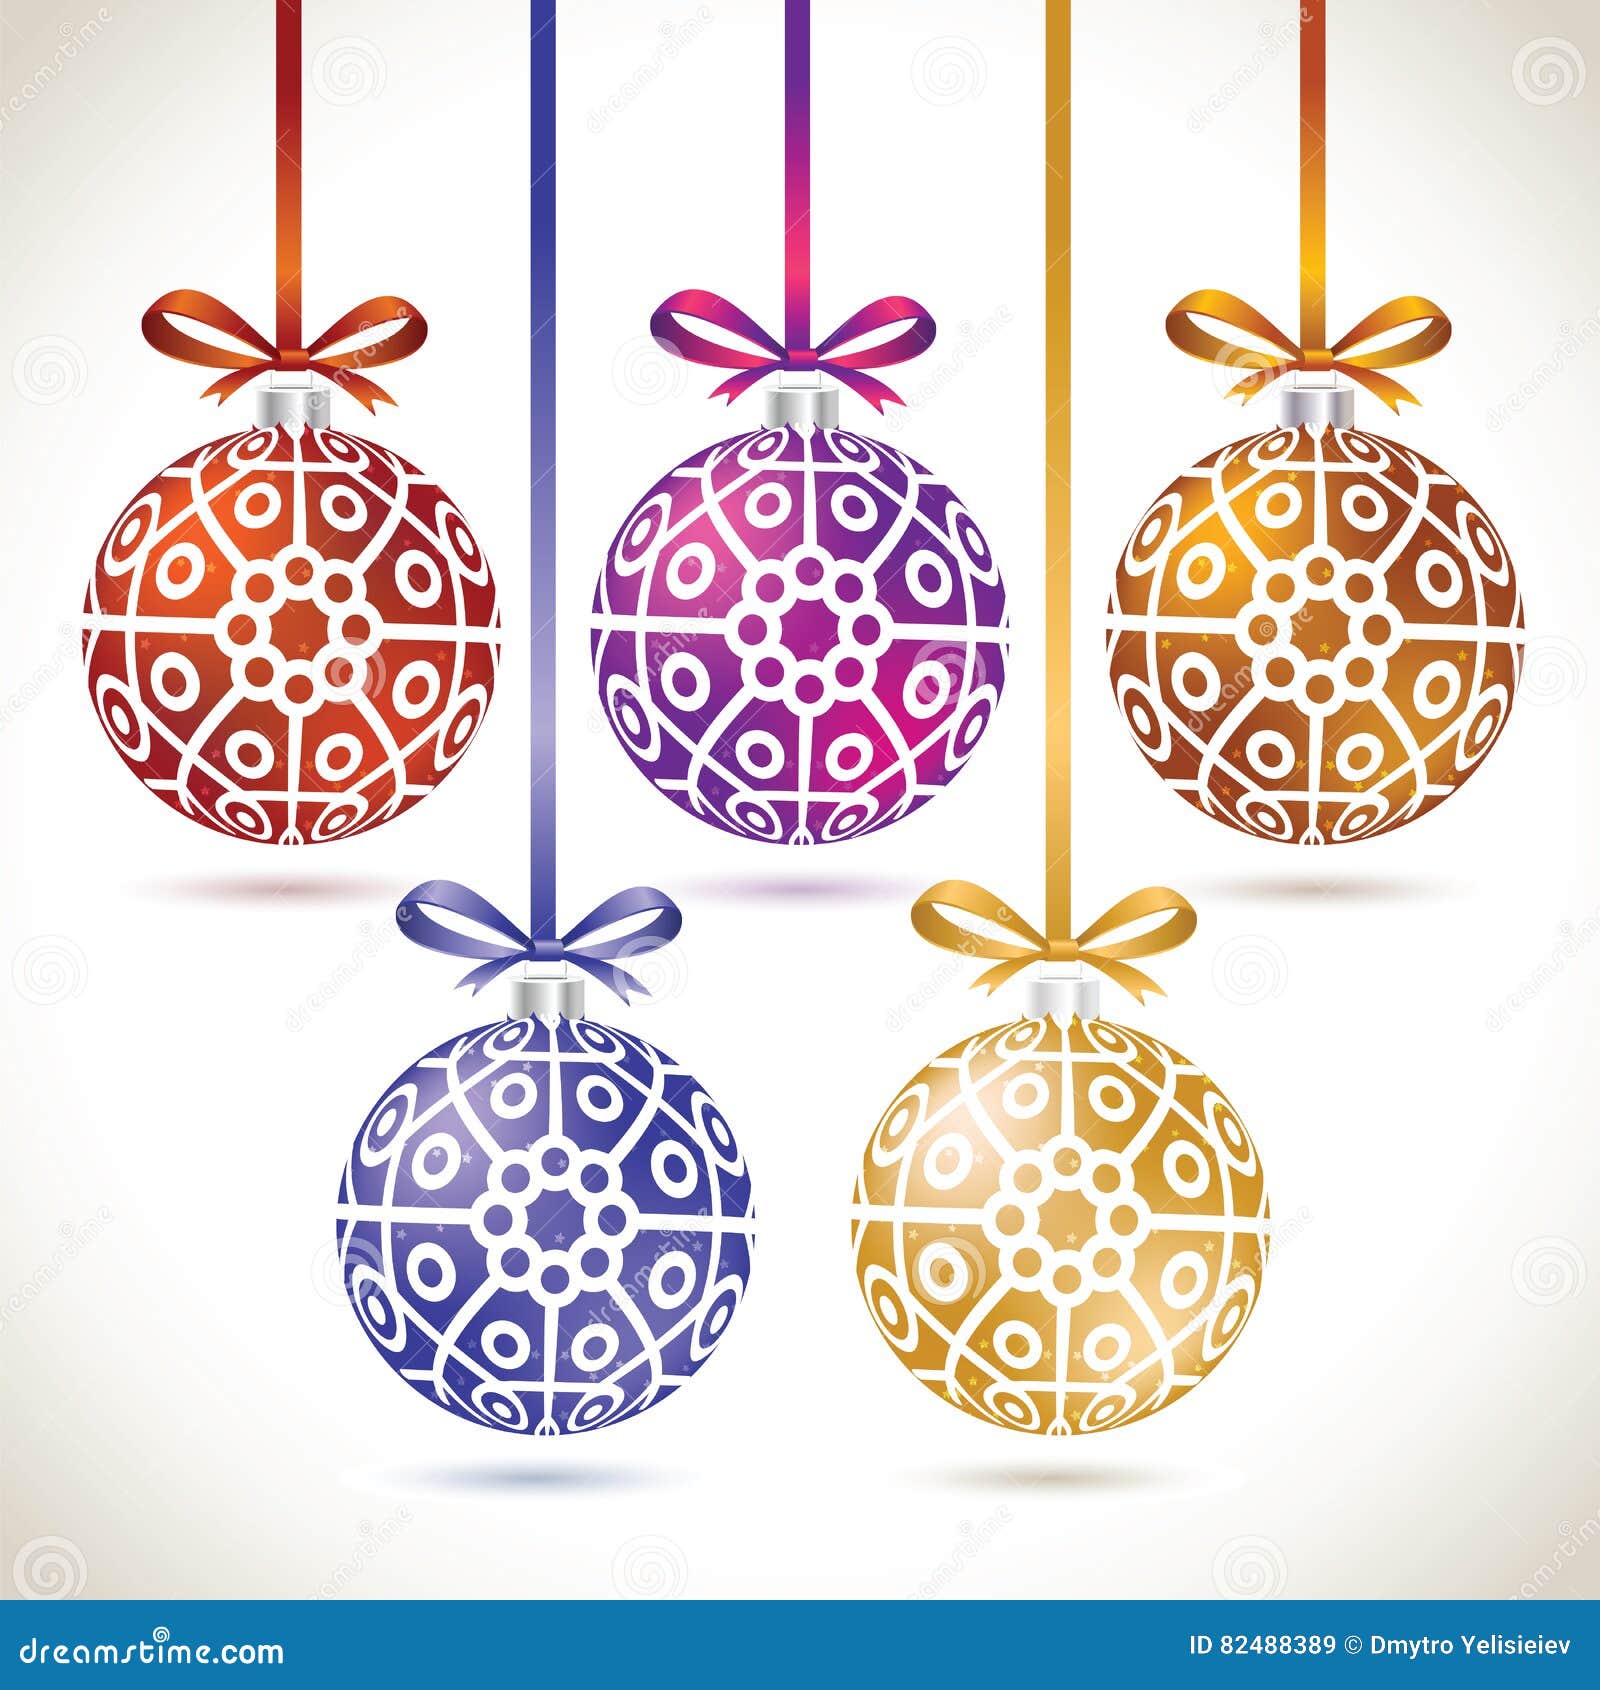 Grupo de suspensão colorido das bolas do Natal na fita para a árvore de Natal. Grupo de suspensão colorido das bolas do Natal na fita para a decoração da árvore de Natal Coleção das bolas do ano novo a denominar o Web site Jogo dos flocos de neve em bolas